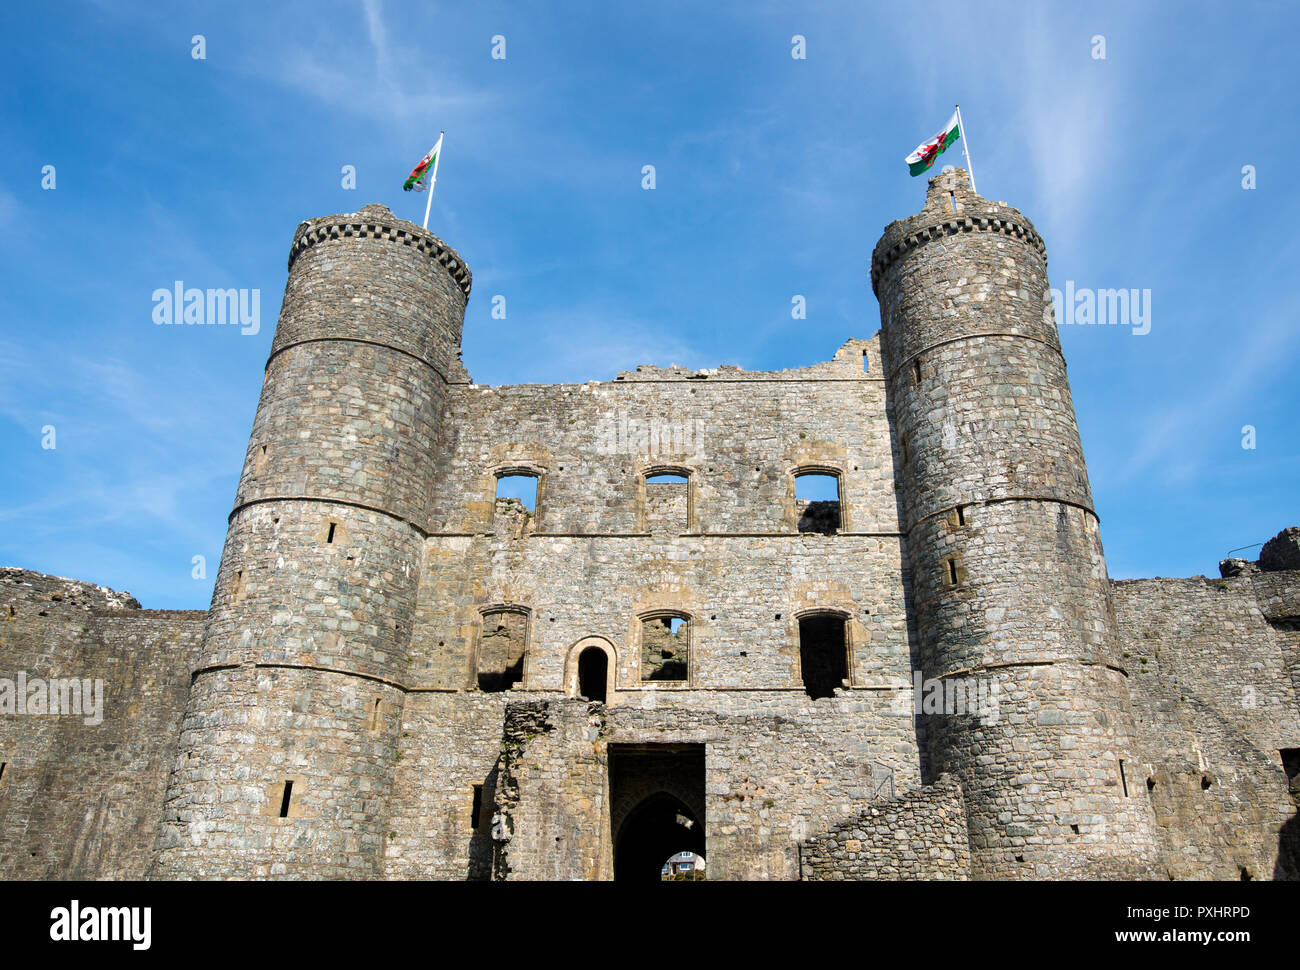 Harlech Castle in Gwynedd, North Wales Stock Photo